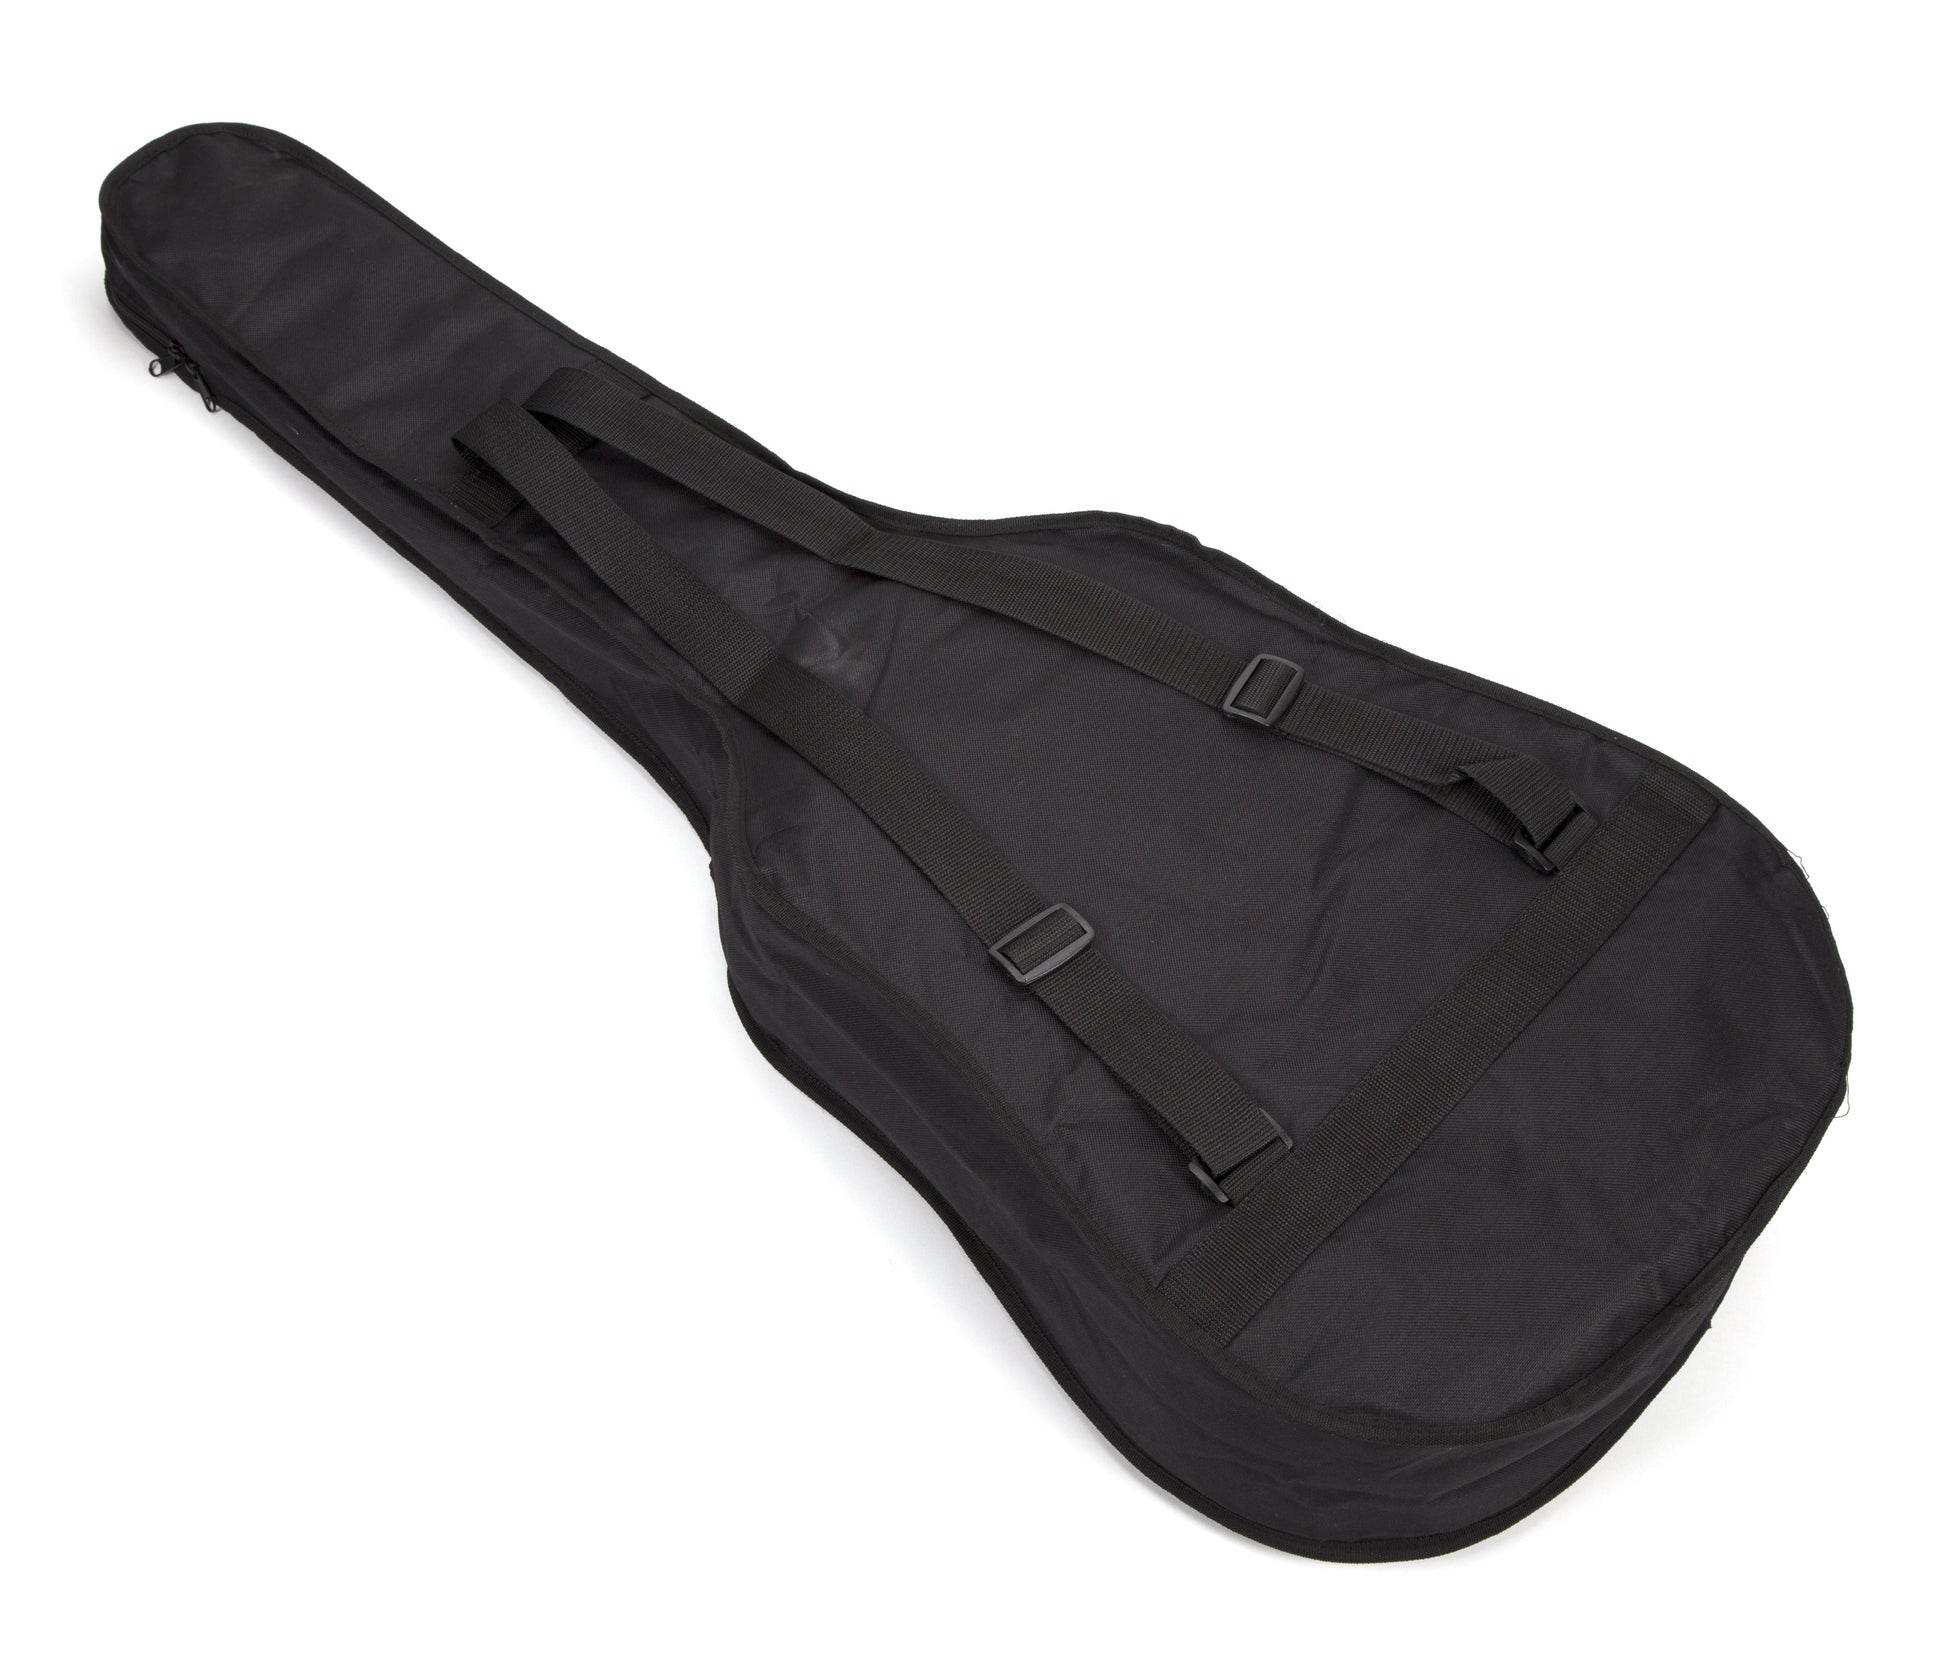 Natural Acoustic Guitar Kit with Guitar Tuner, Guitar Bag & Guitar Stand